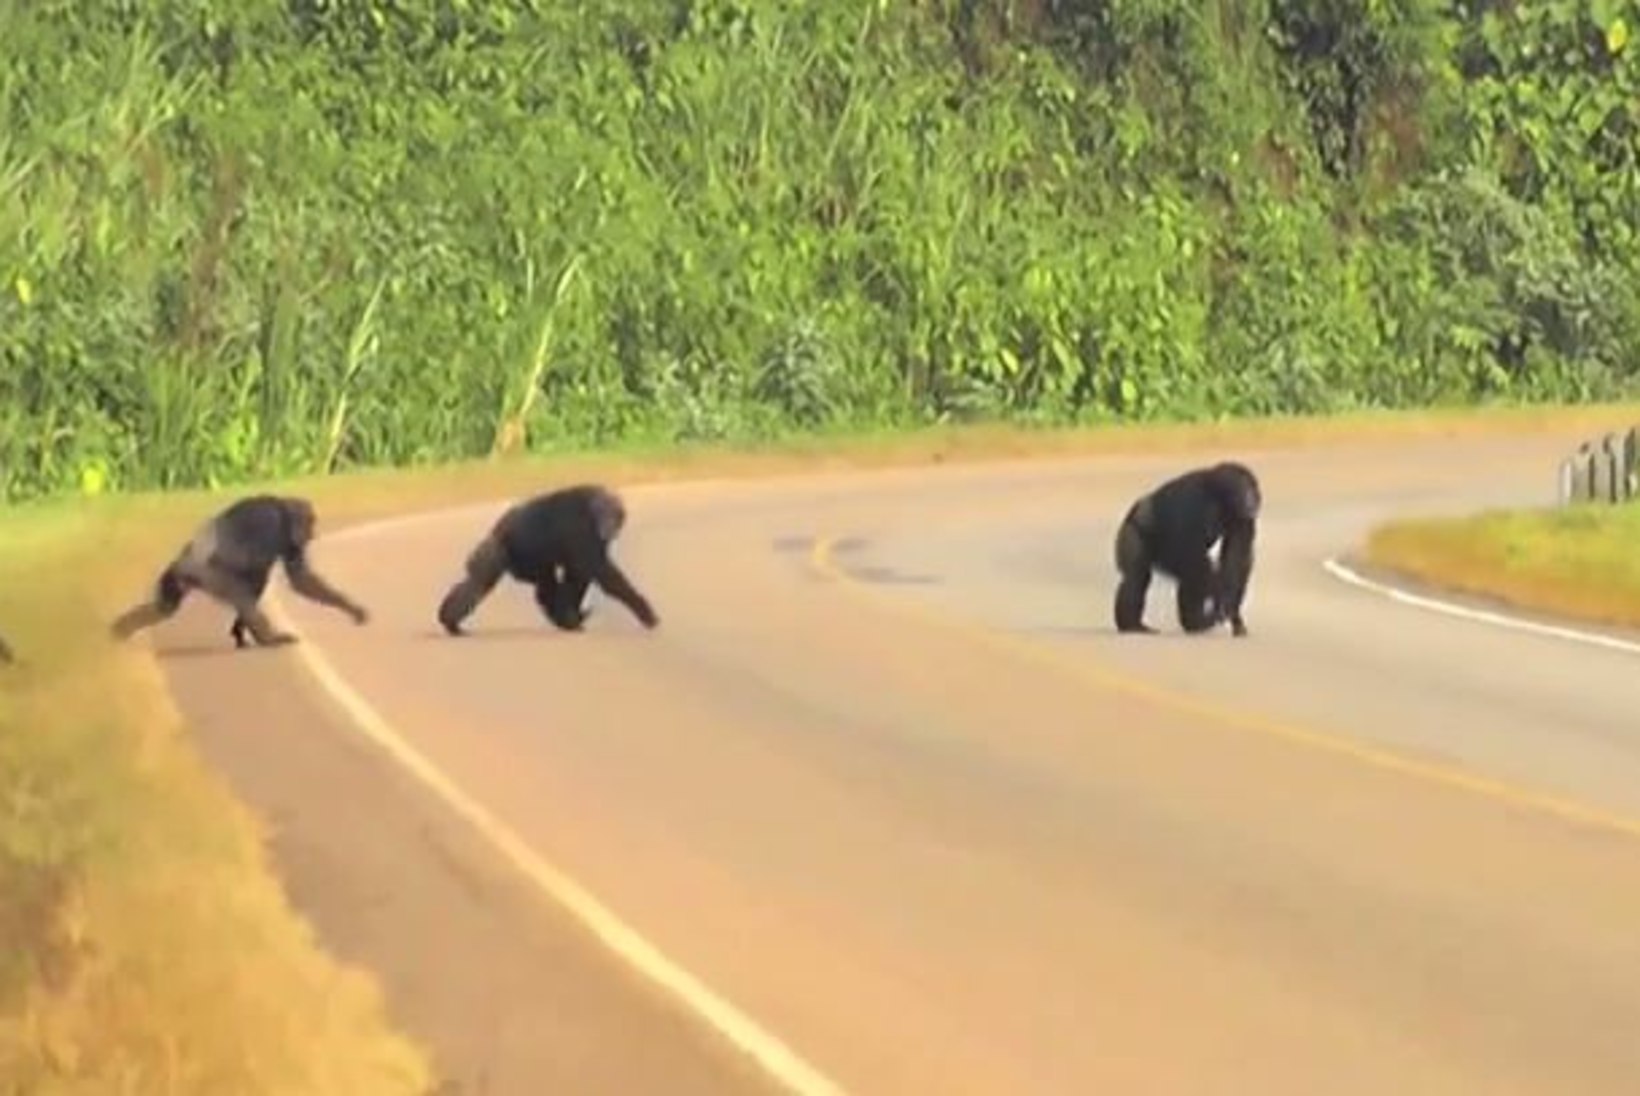 VÕTA AHVIDEST EESKUJU: šimpansid vaatavad enne sõiduteele astumist hoolikalt mõlemale poole